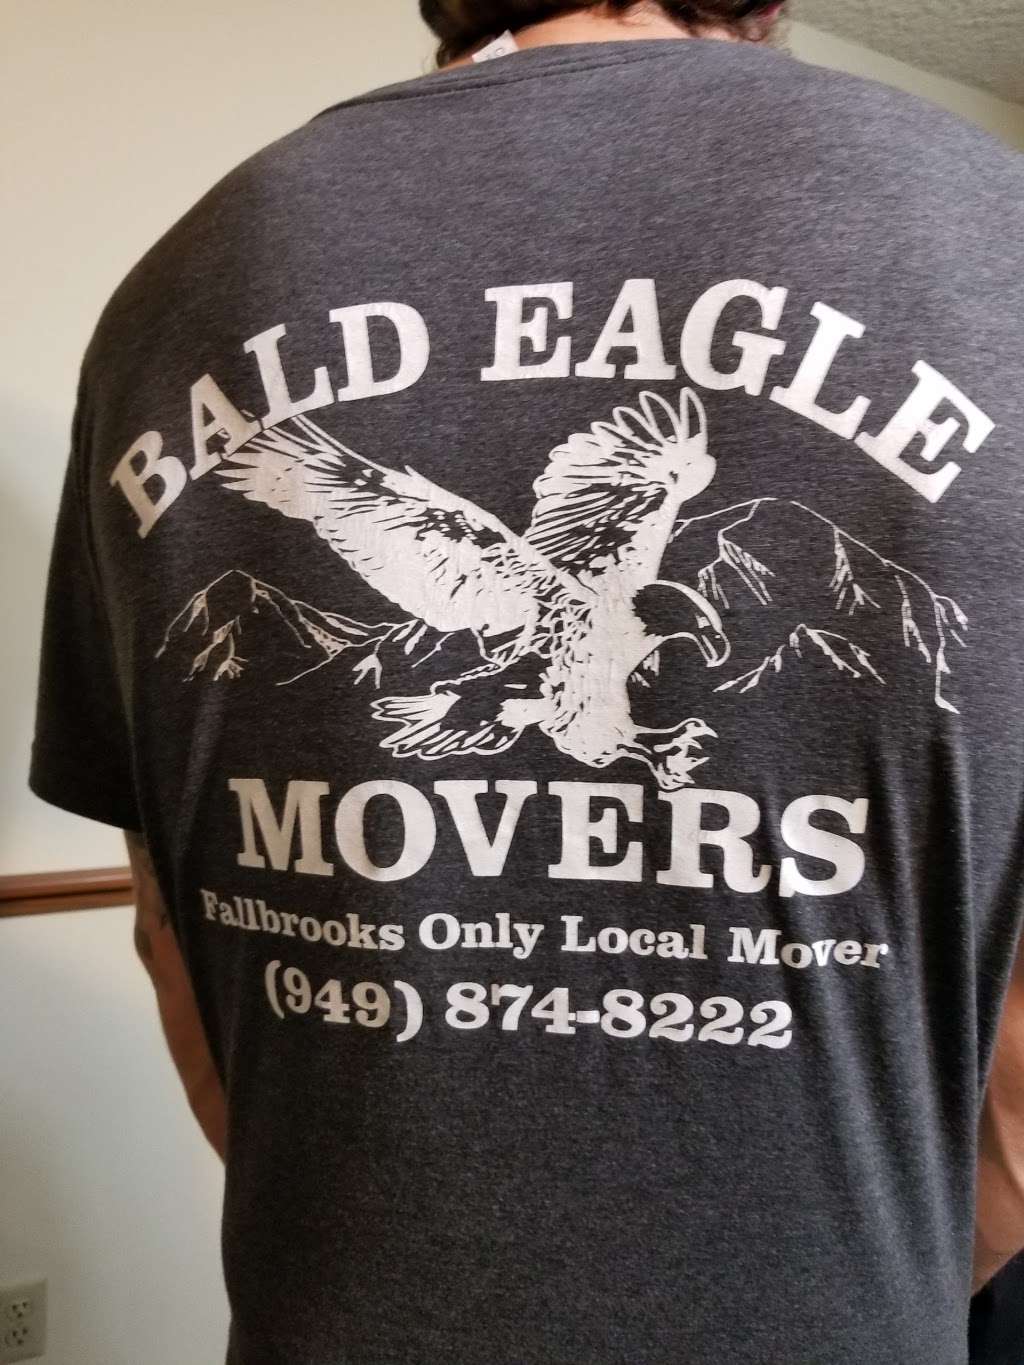 Bald Eagle Movers | 2629, 419 S Ridge Dr, Fallbrook, CA 92028 | Phone: (949) 874-8222